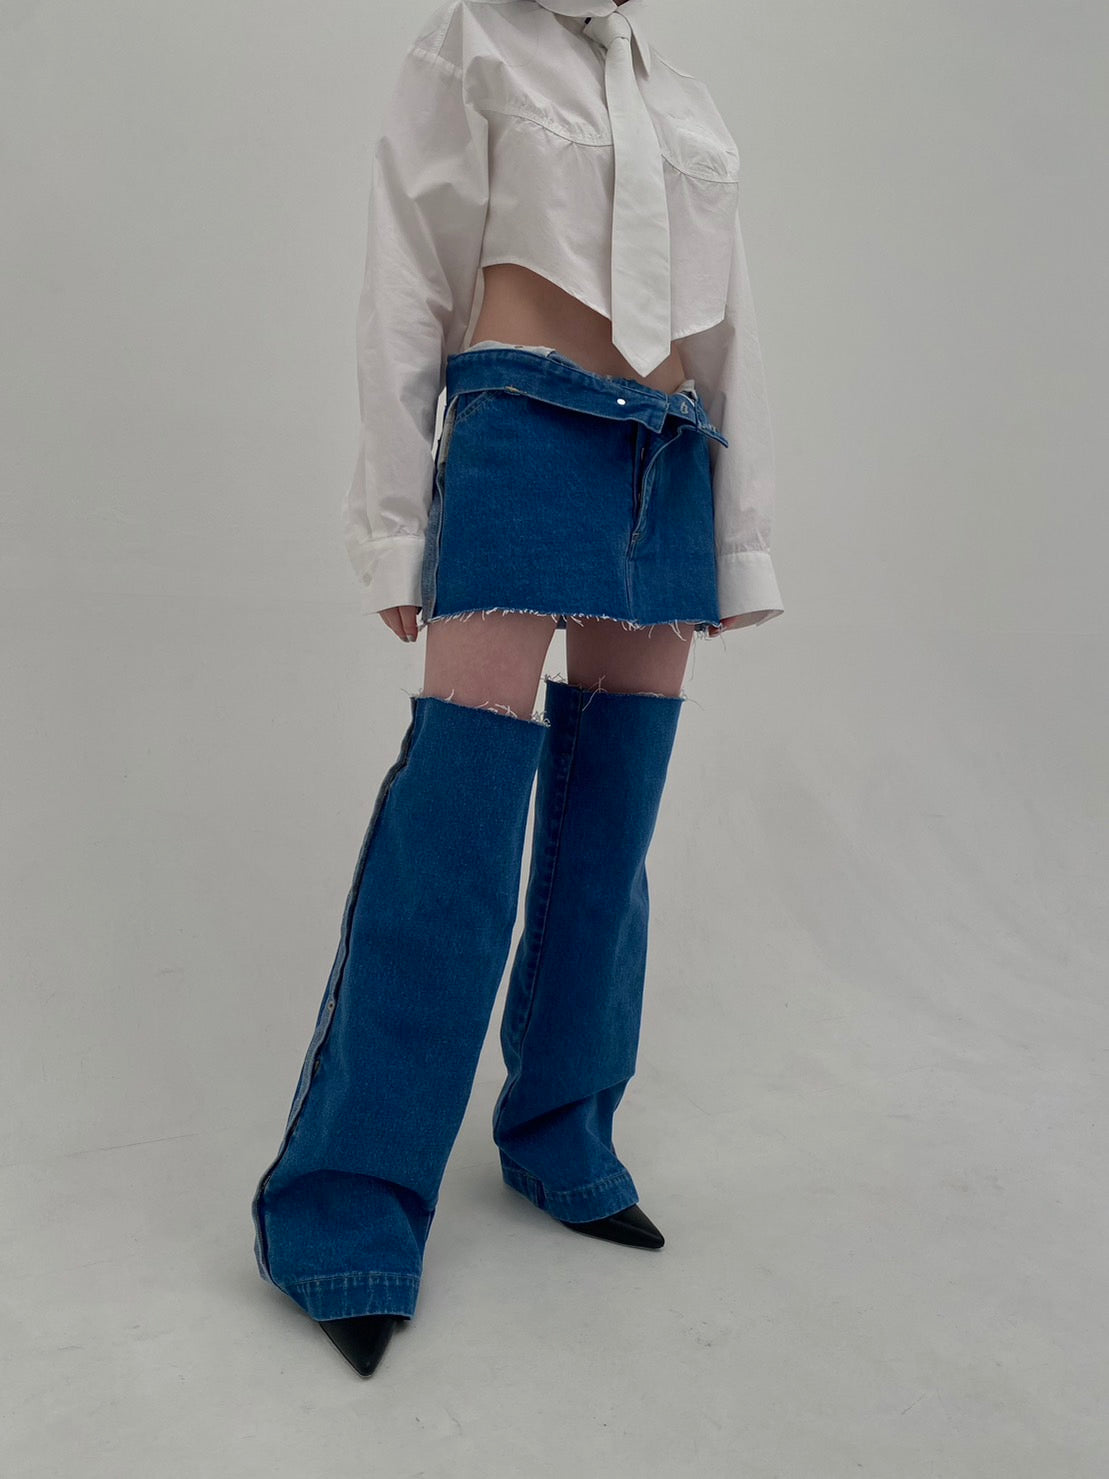 neith./Denim Skirt With Legcover デニムスカート - ミニスカート